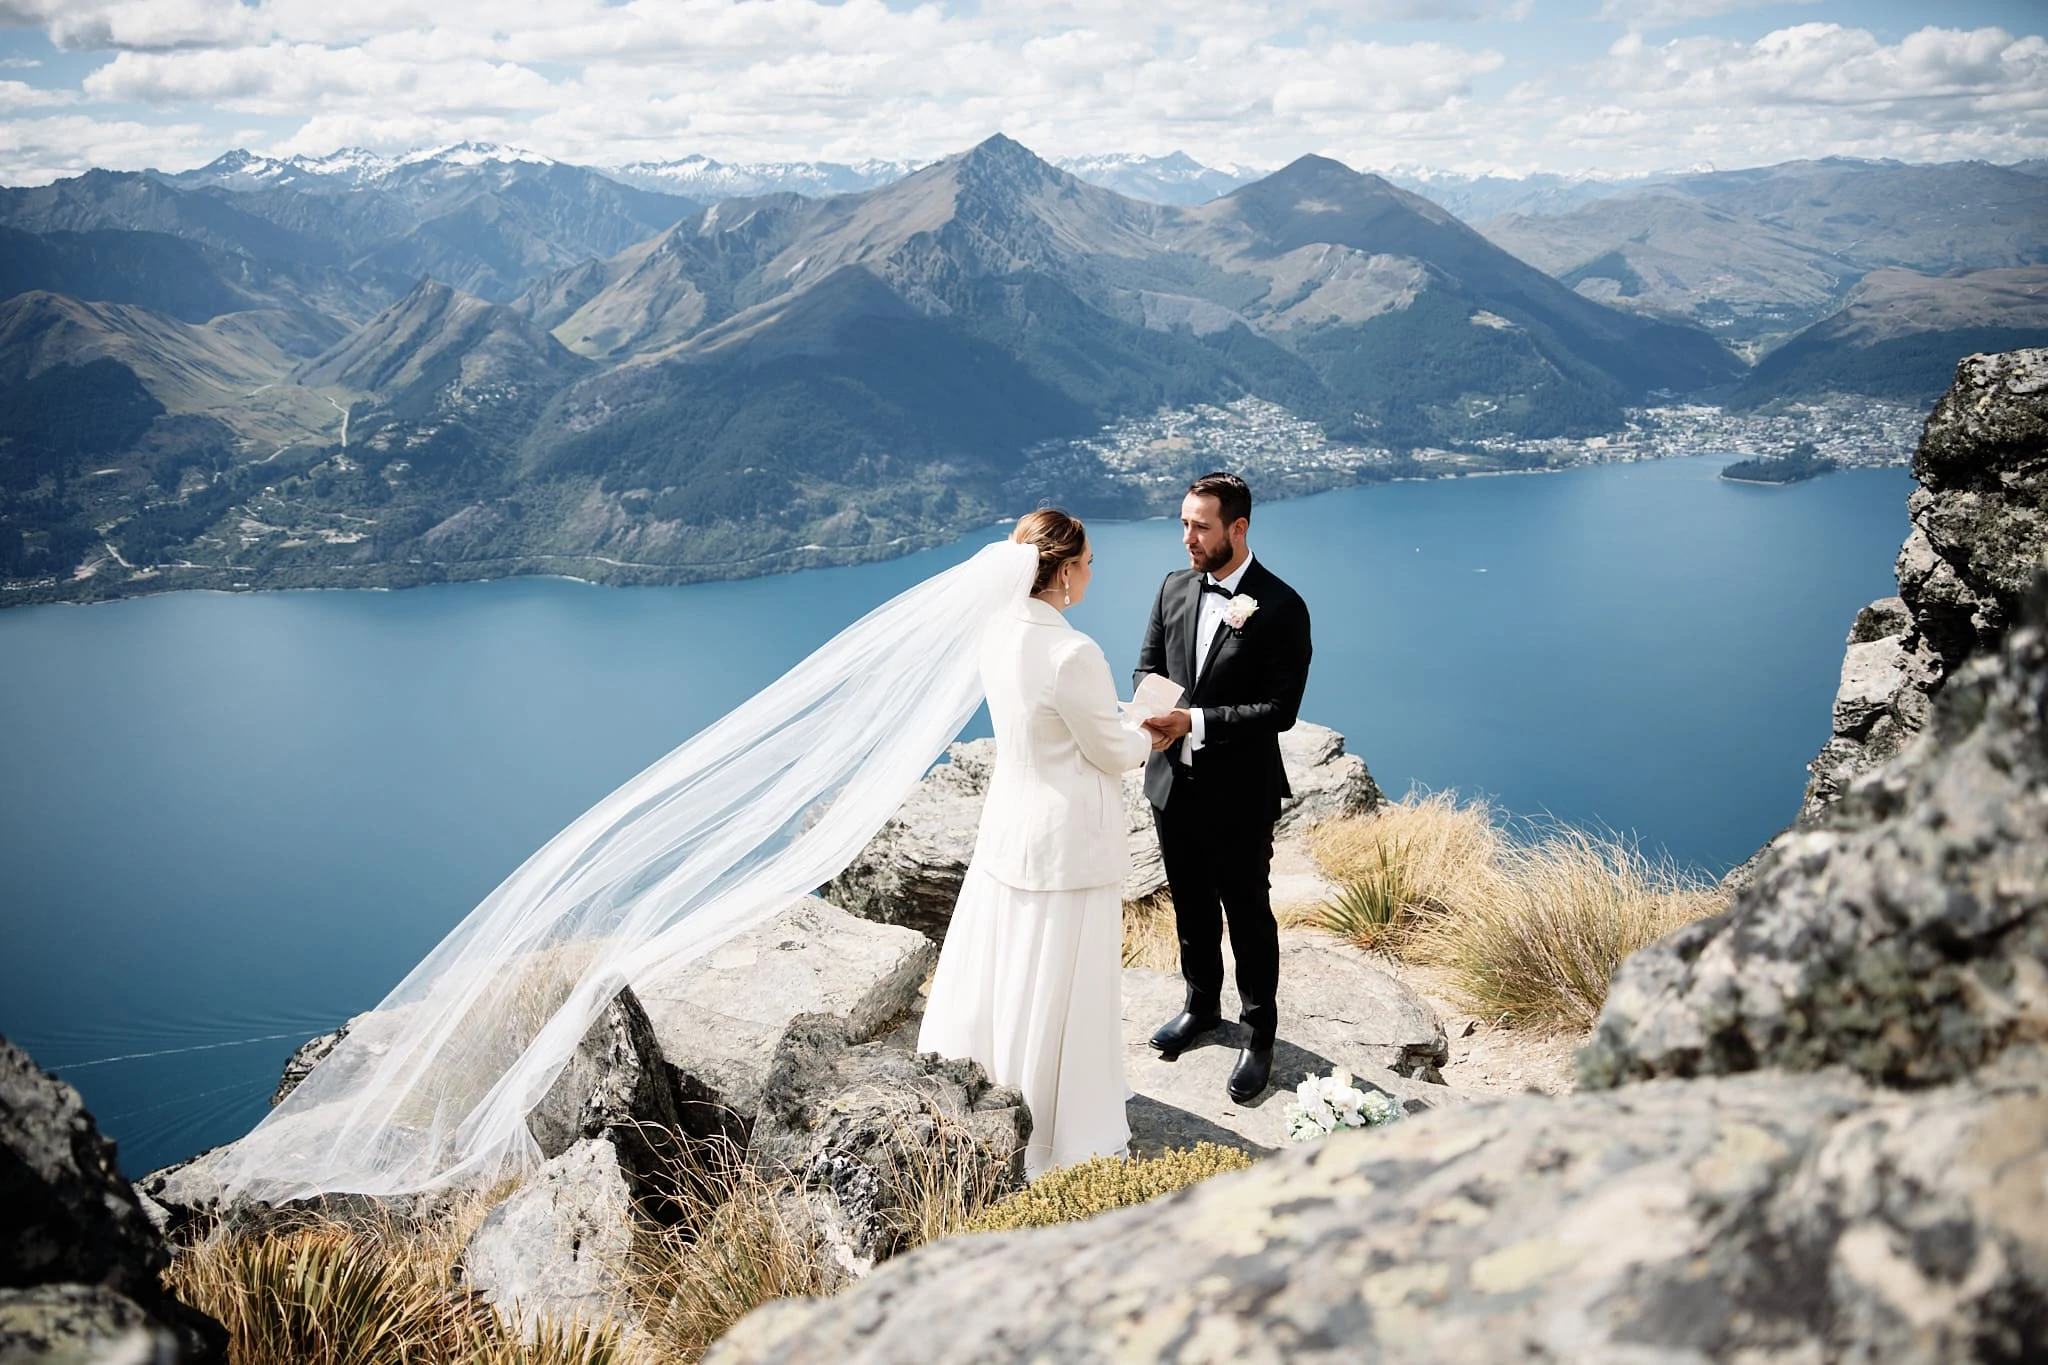 queenstown cecil peak heli wedding elopement photographer nz new zealand